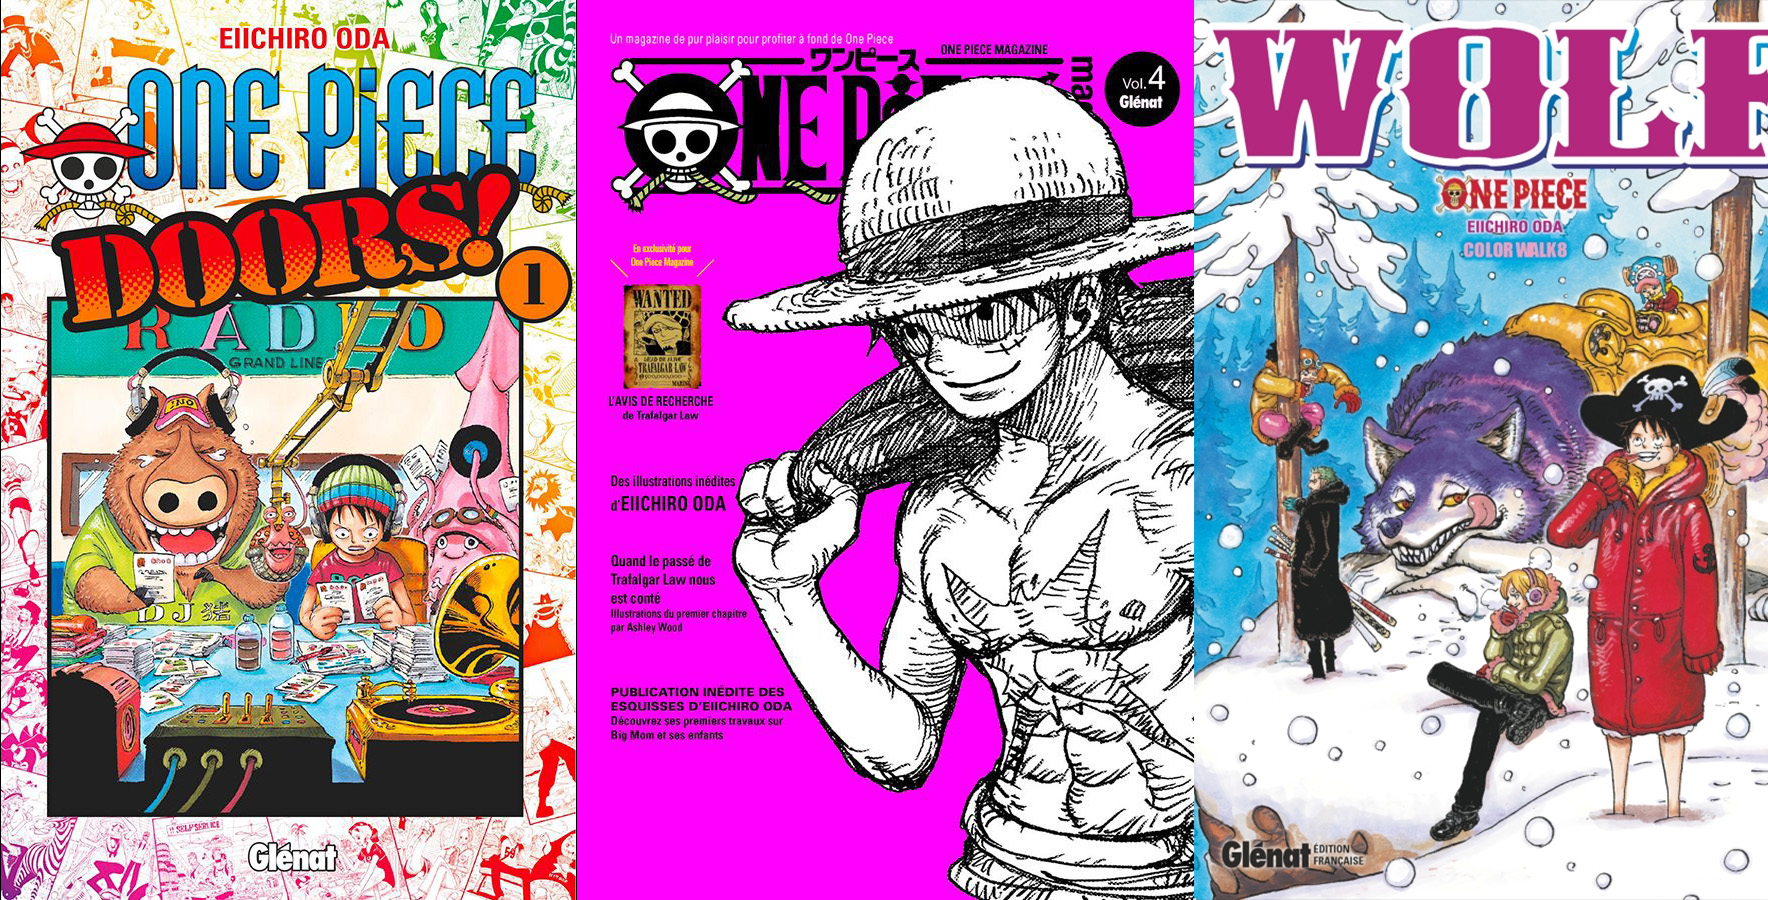 One Piece Le Chapitre 952 Ne Sort Pas Aujourd Hui Le One Piece Magazine N 4 Sort En Septembre Le One Piece Color Walk N 8 Repousse